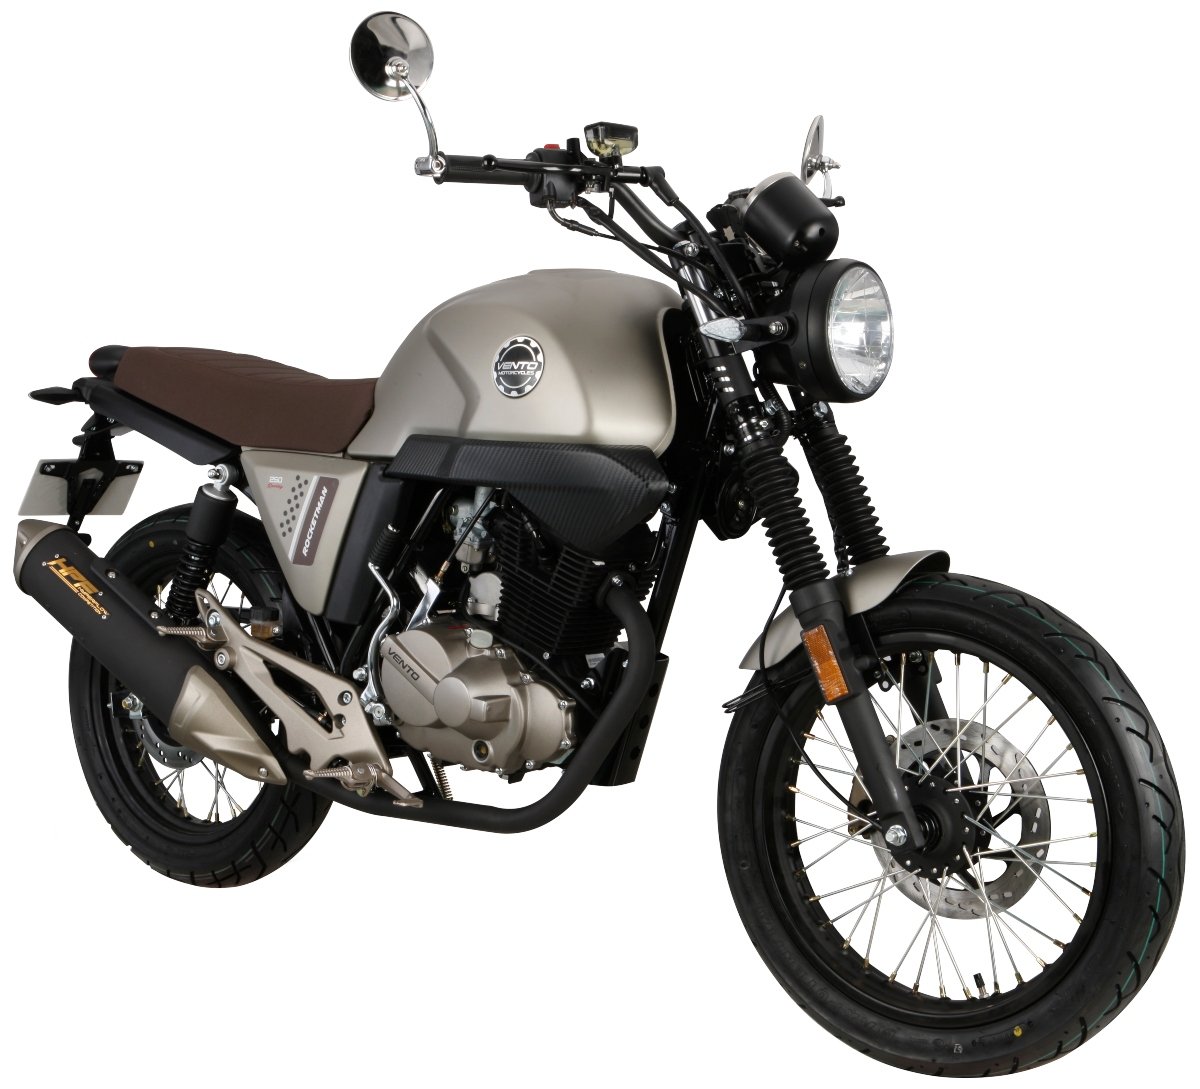 Compra una moto Vento nueva en línea BiMoto en Línea Banco Industrial Guatemala